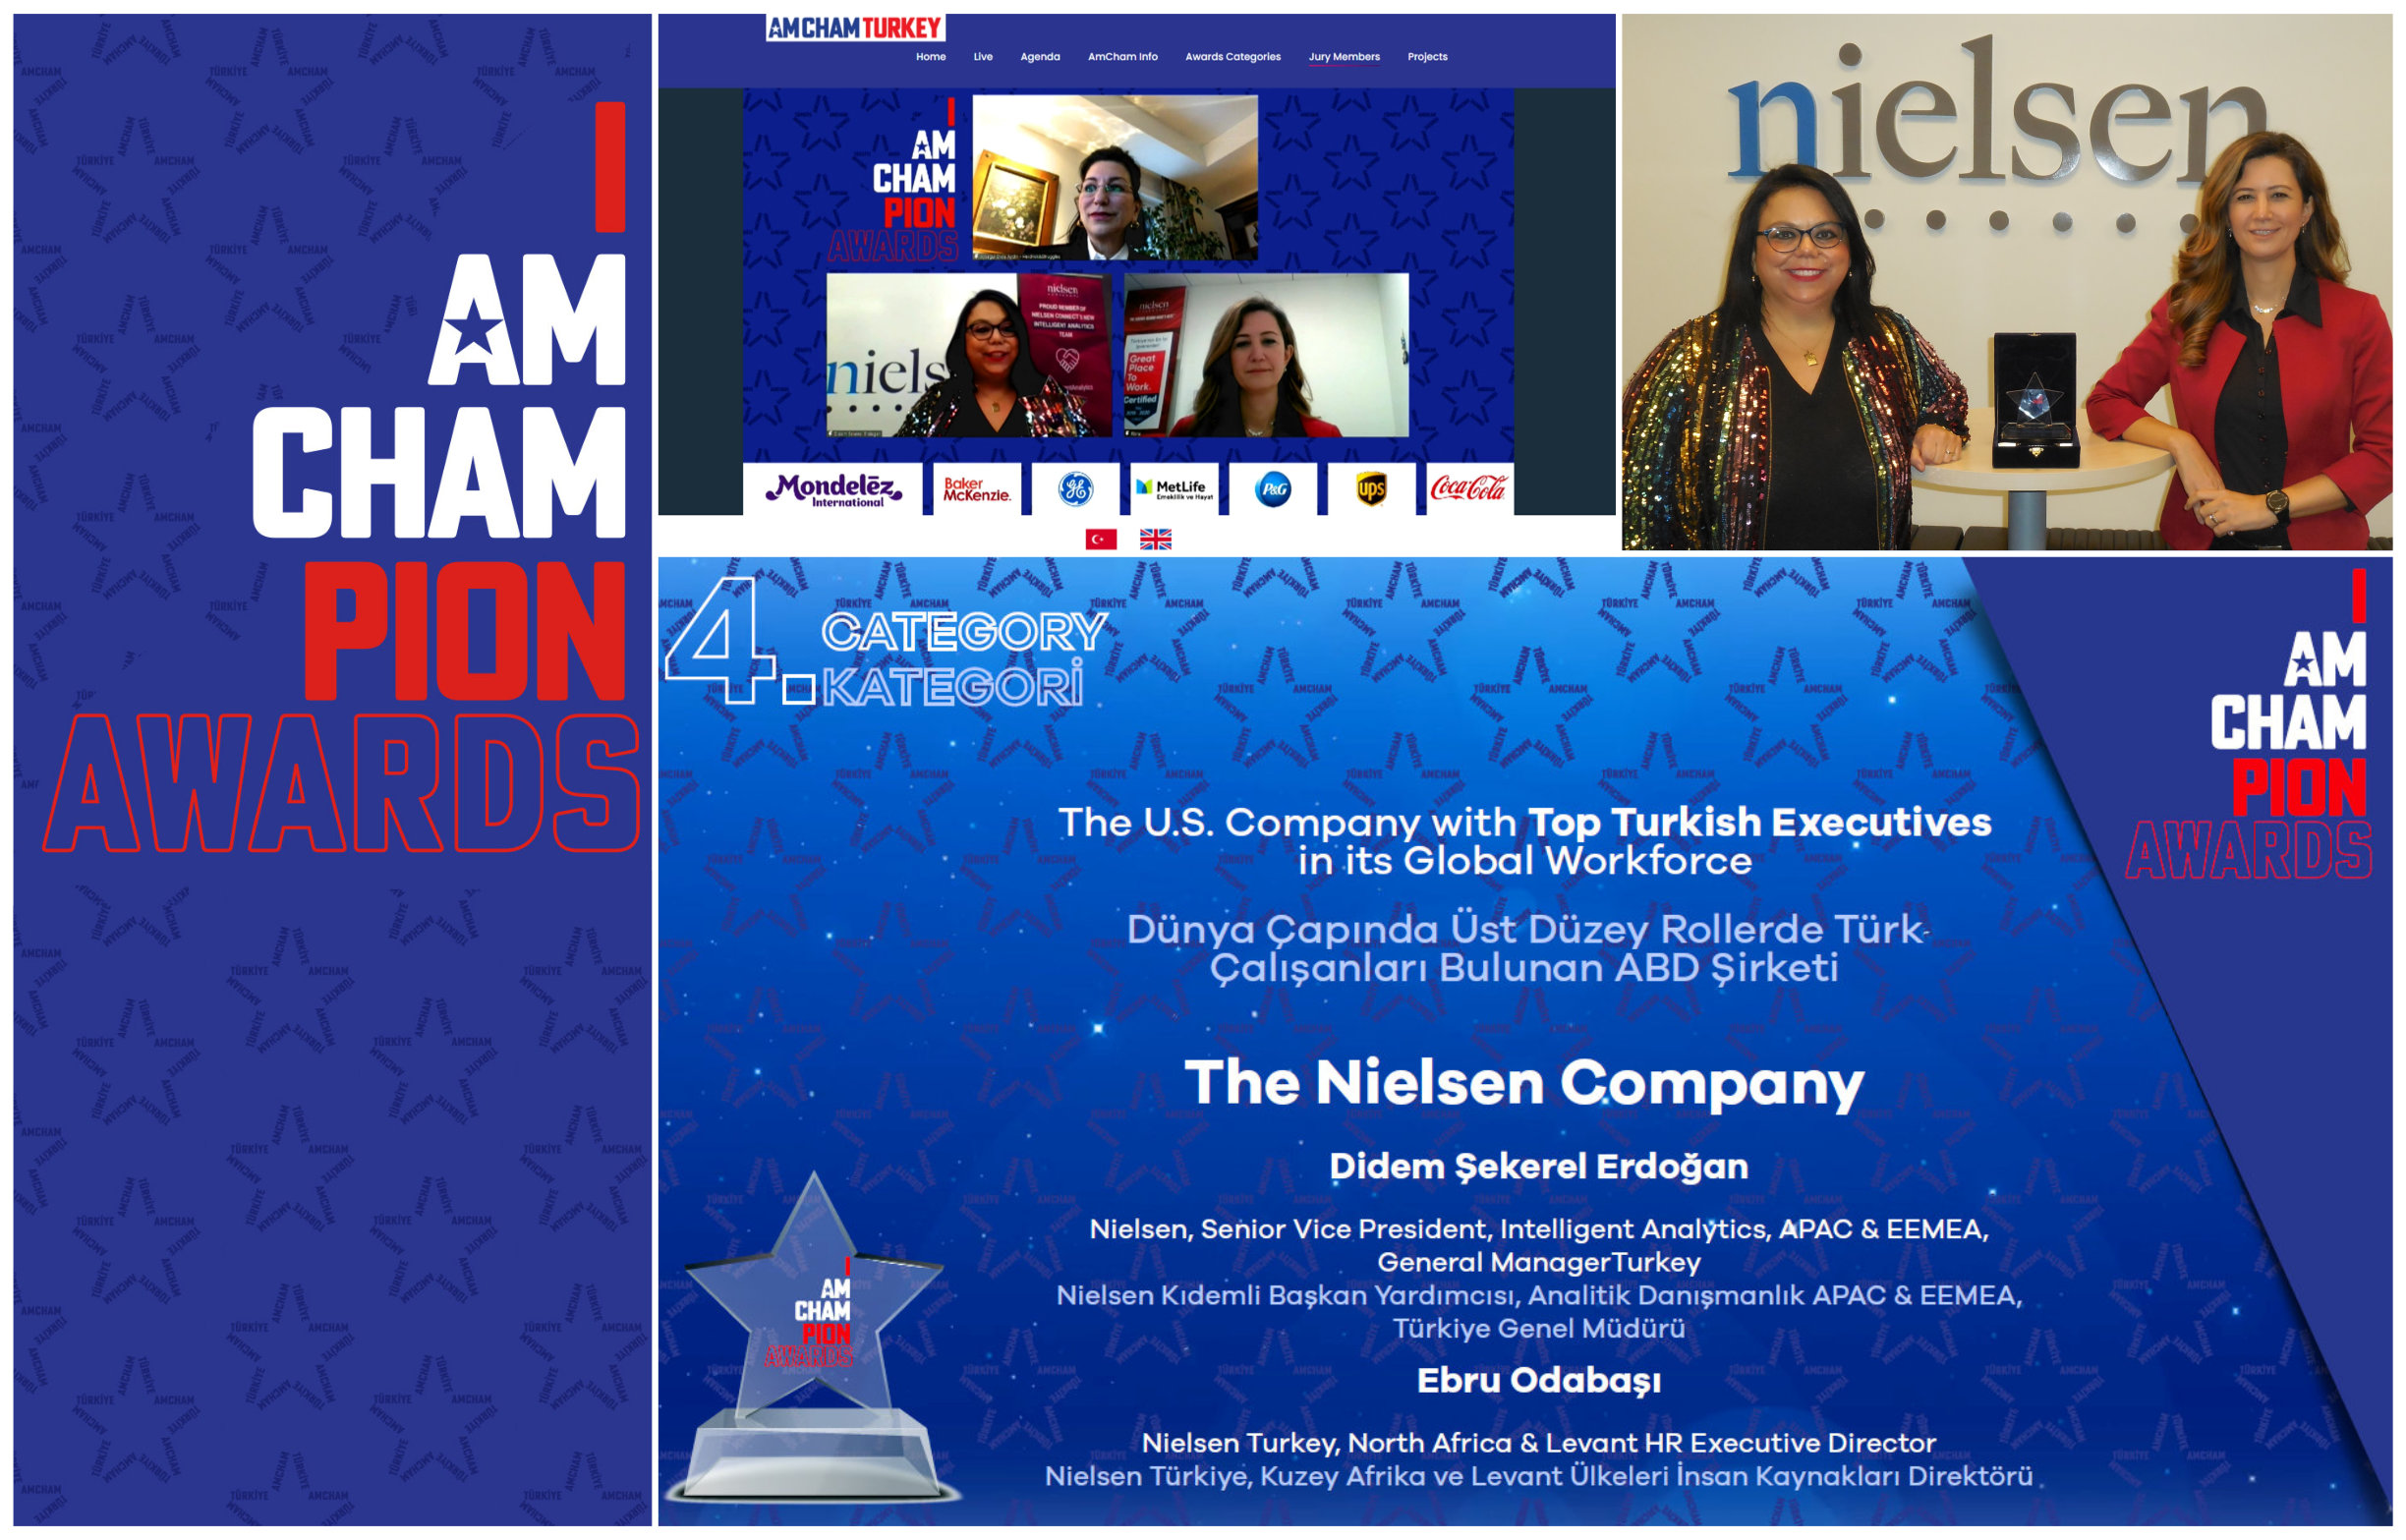 Amerikan Şirketler Derneği’nden  Nielsen’e “Uluslararası İş Gücündeki Türk Liderler” Ödülü…